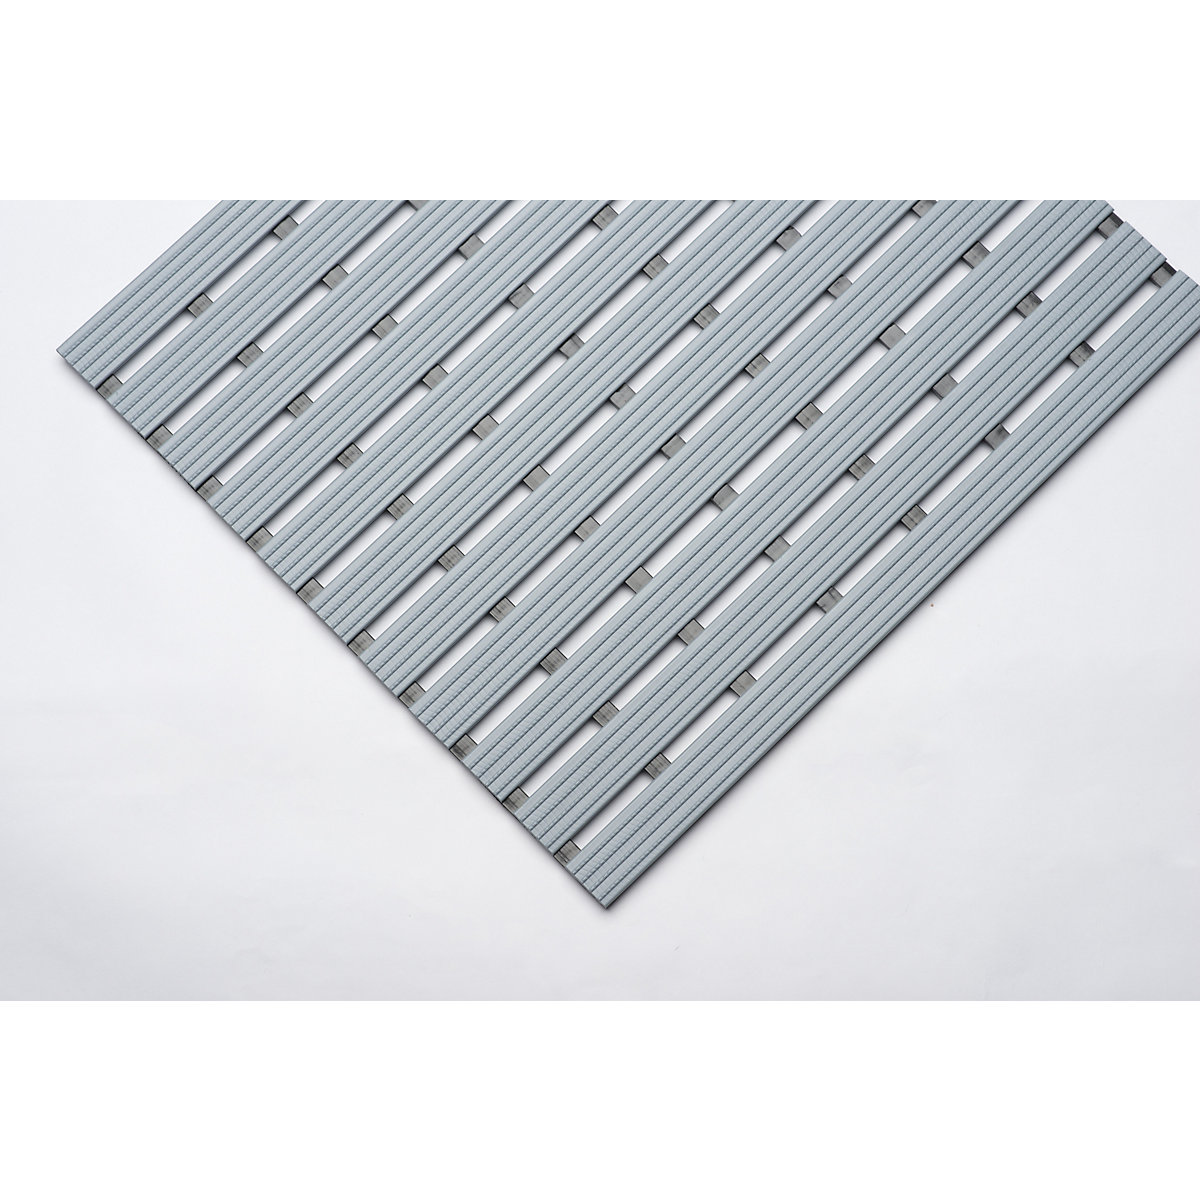 PVC profile matting, per metre – EHA